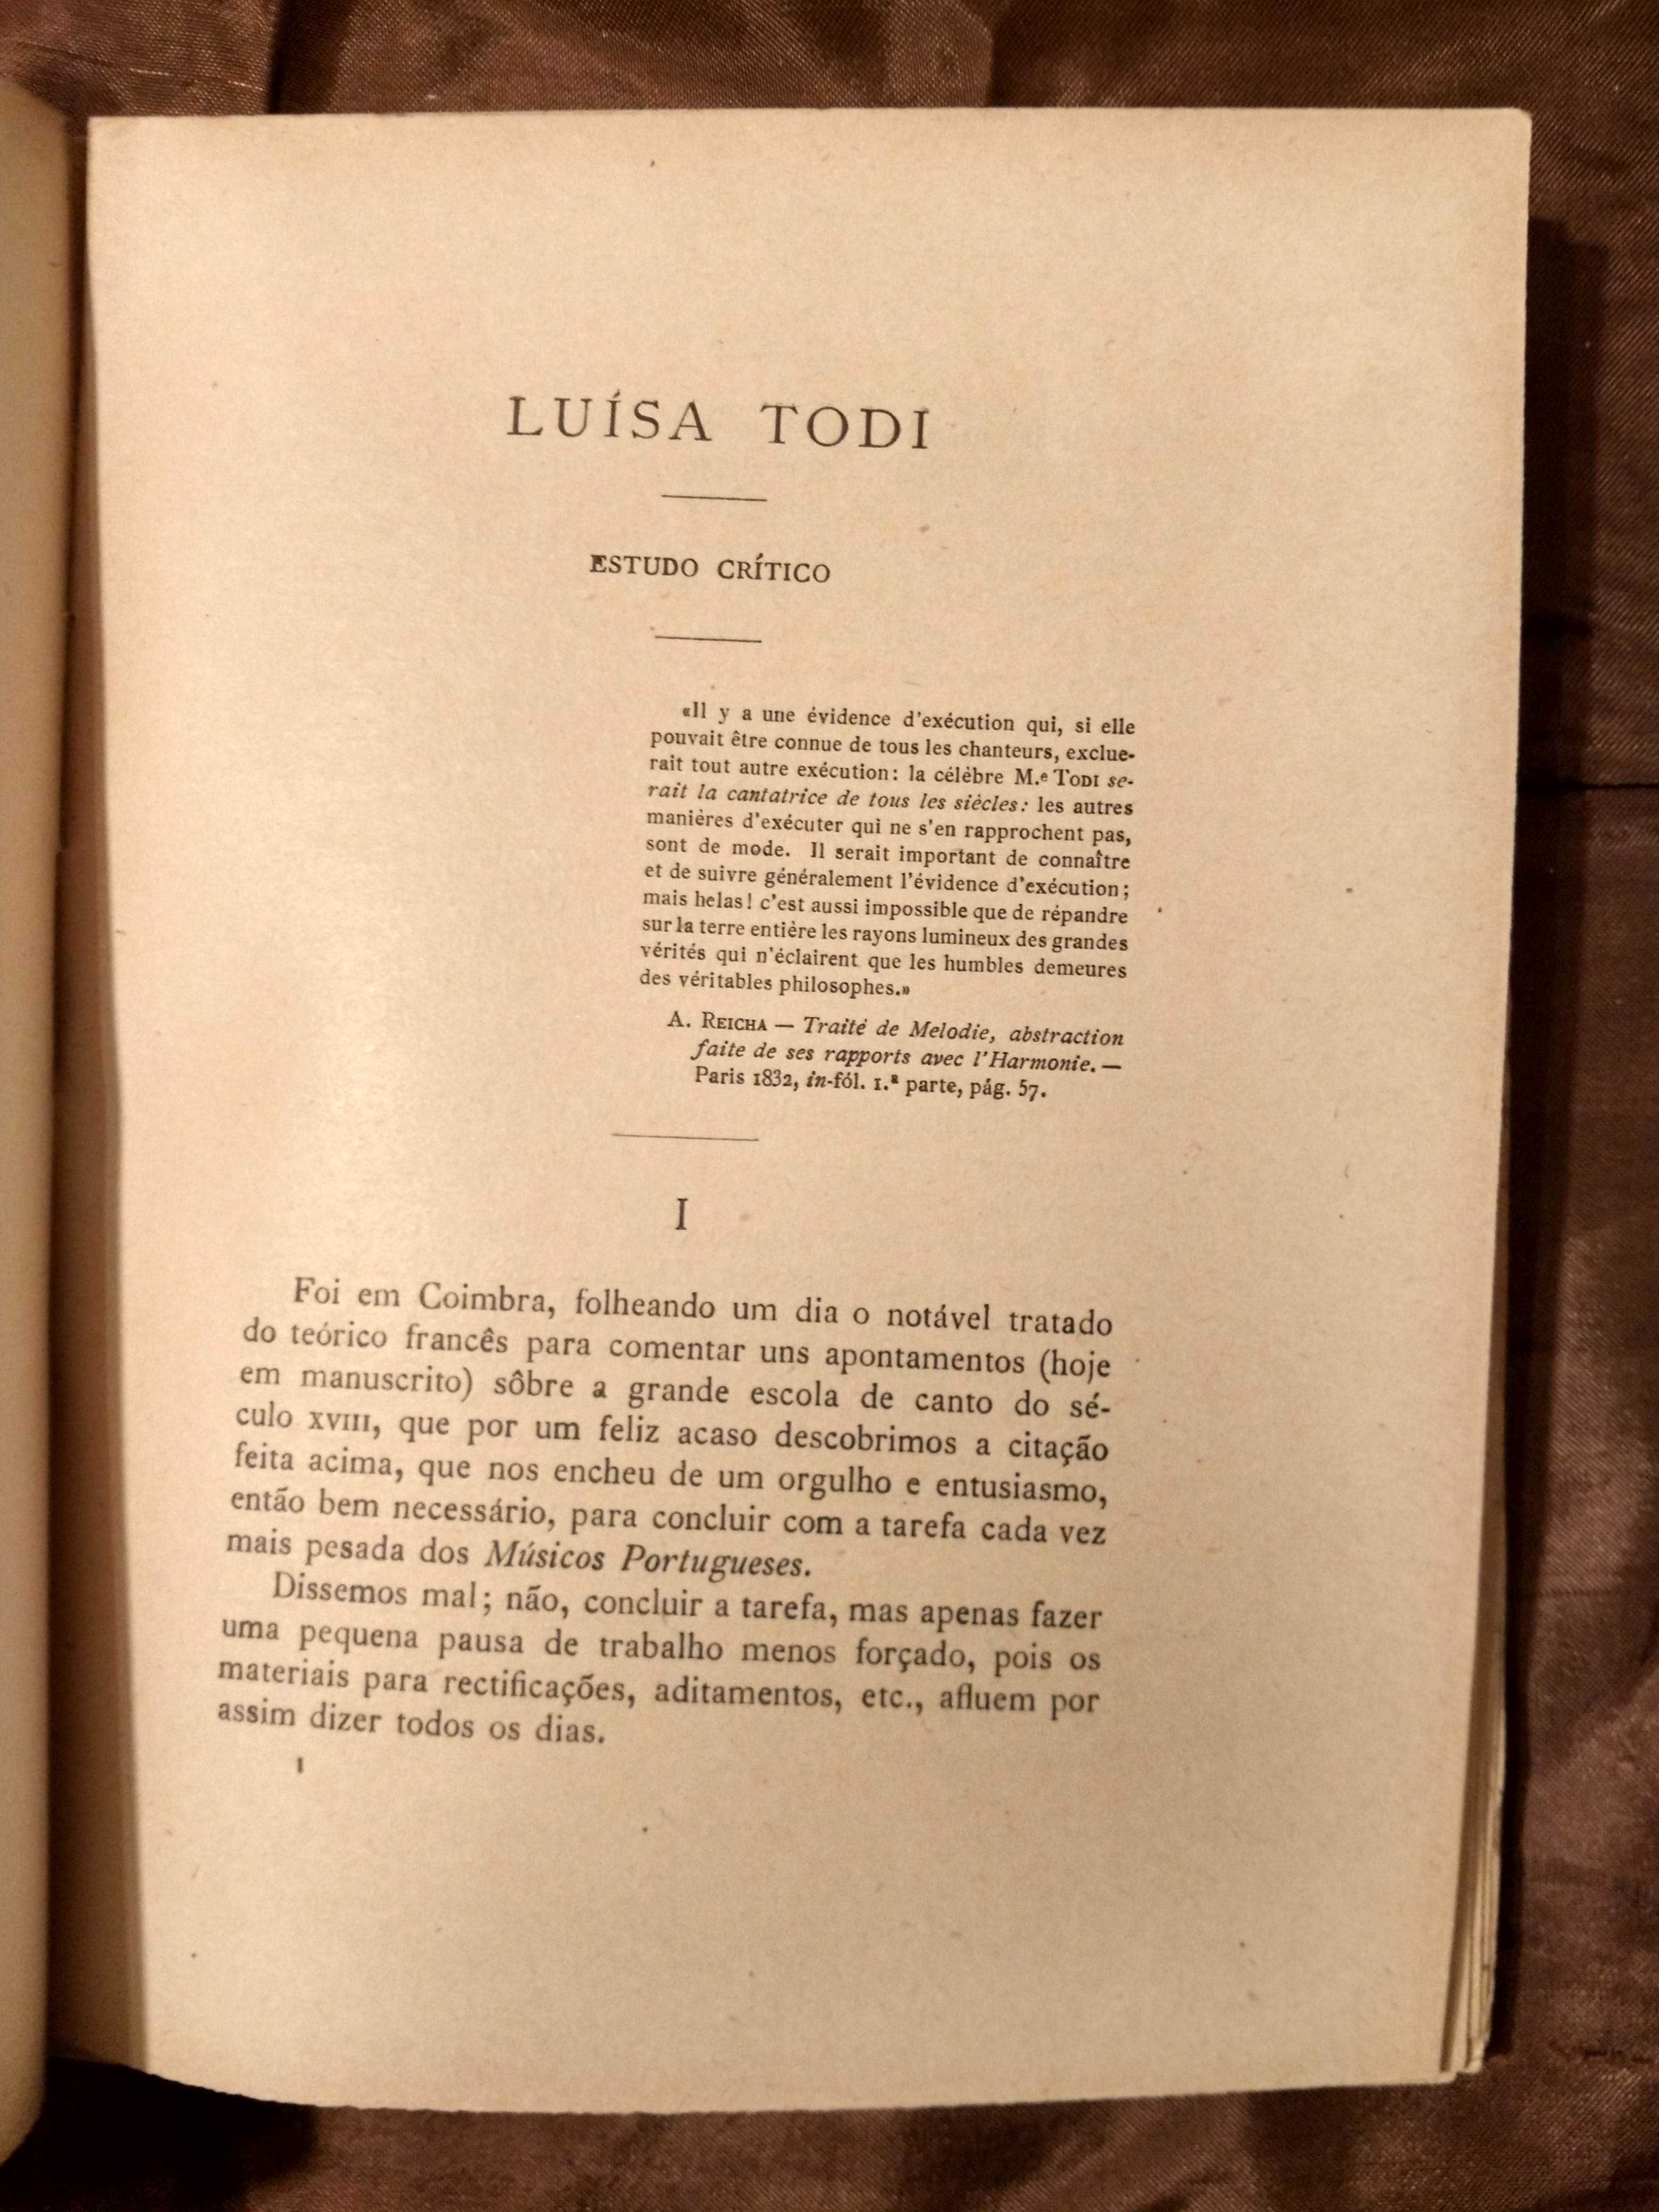 LUÍSA TODI, estudo crítico - Universidade de Coimbra - 1929